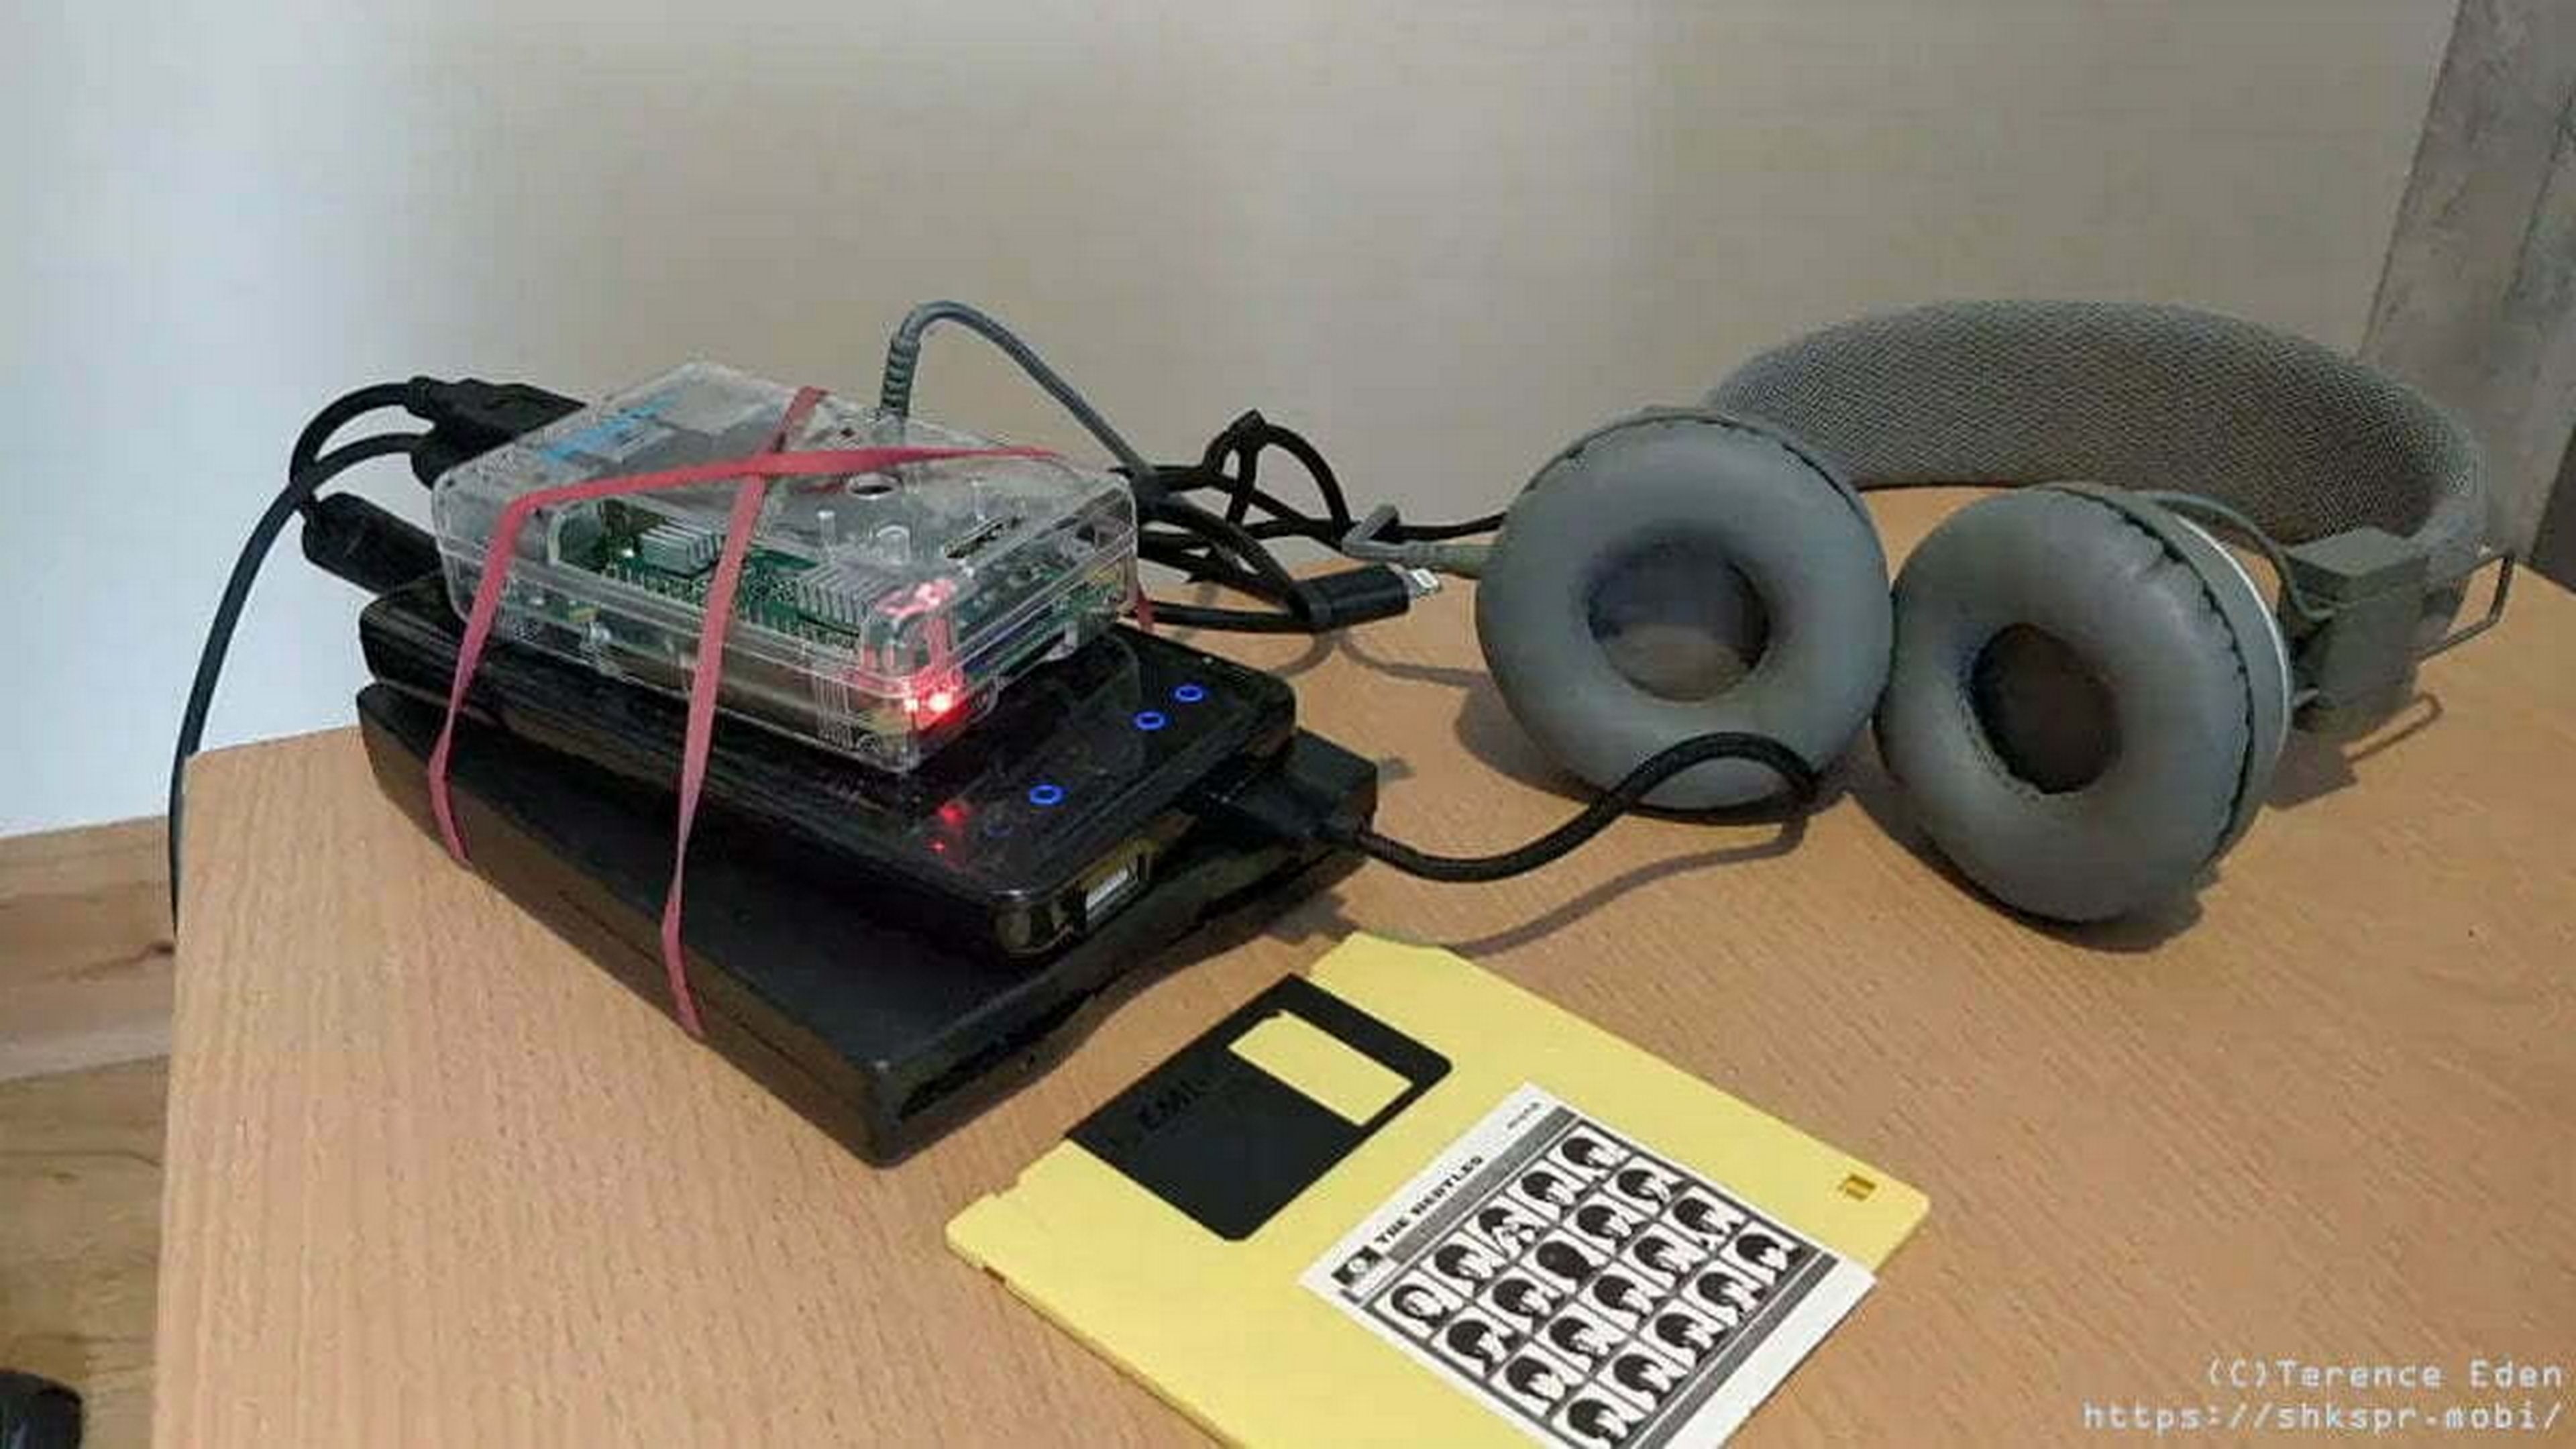 Construyen un walkman que usa disquetes para guardar la música usando una Raspberry Pi